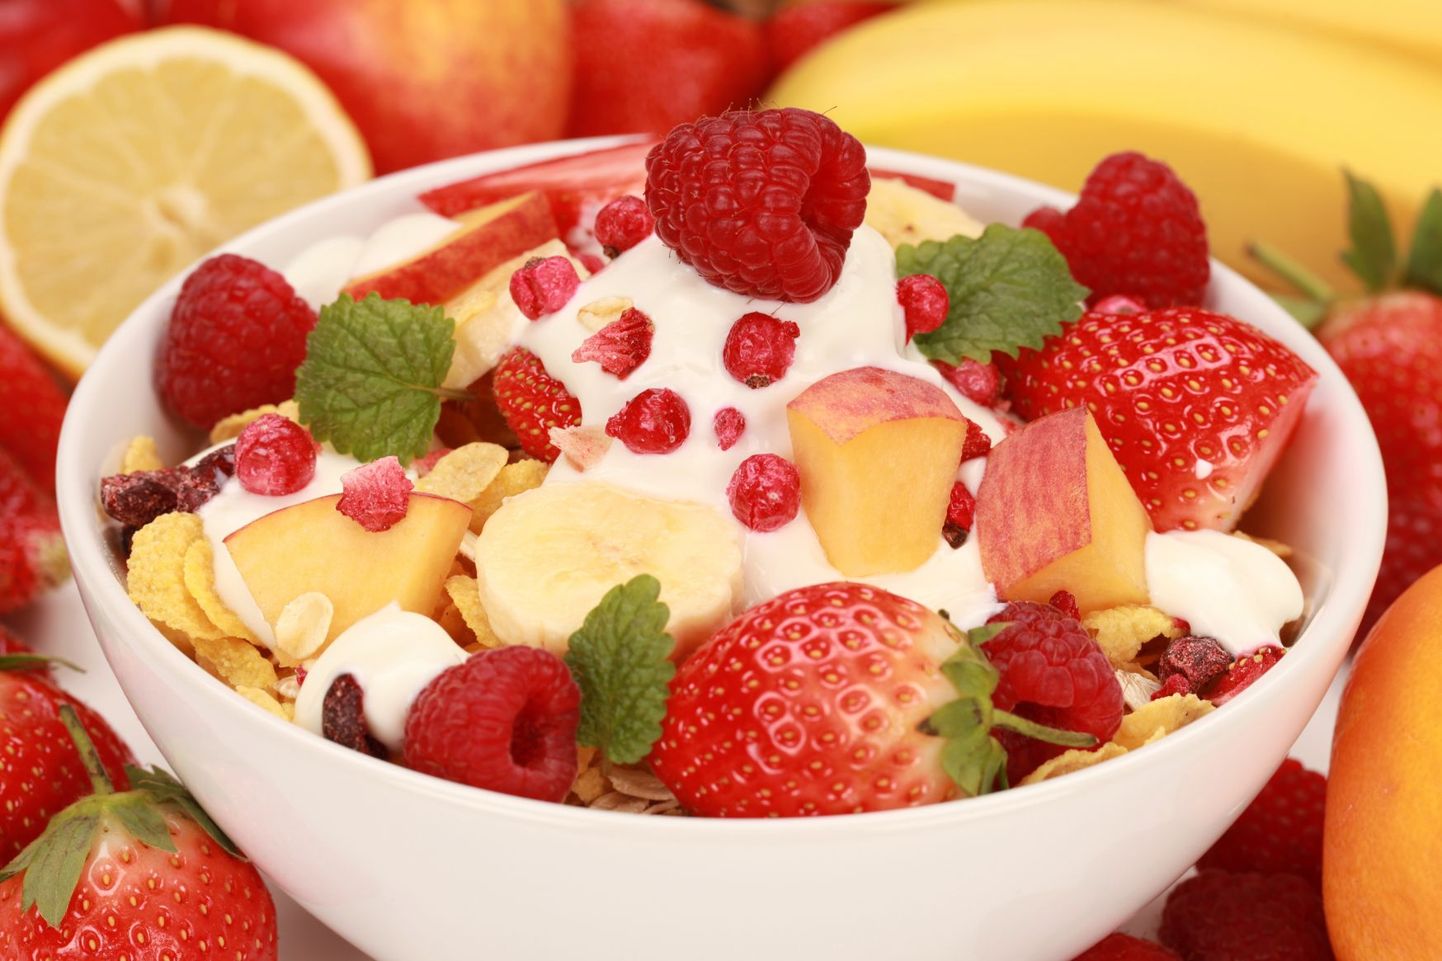 Probiootikumidega jogurt koos puuviljade ja marjadega aitab tõsta tuju.